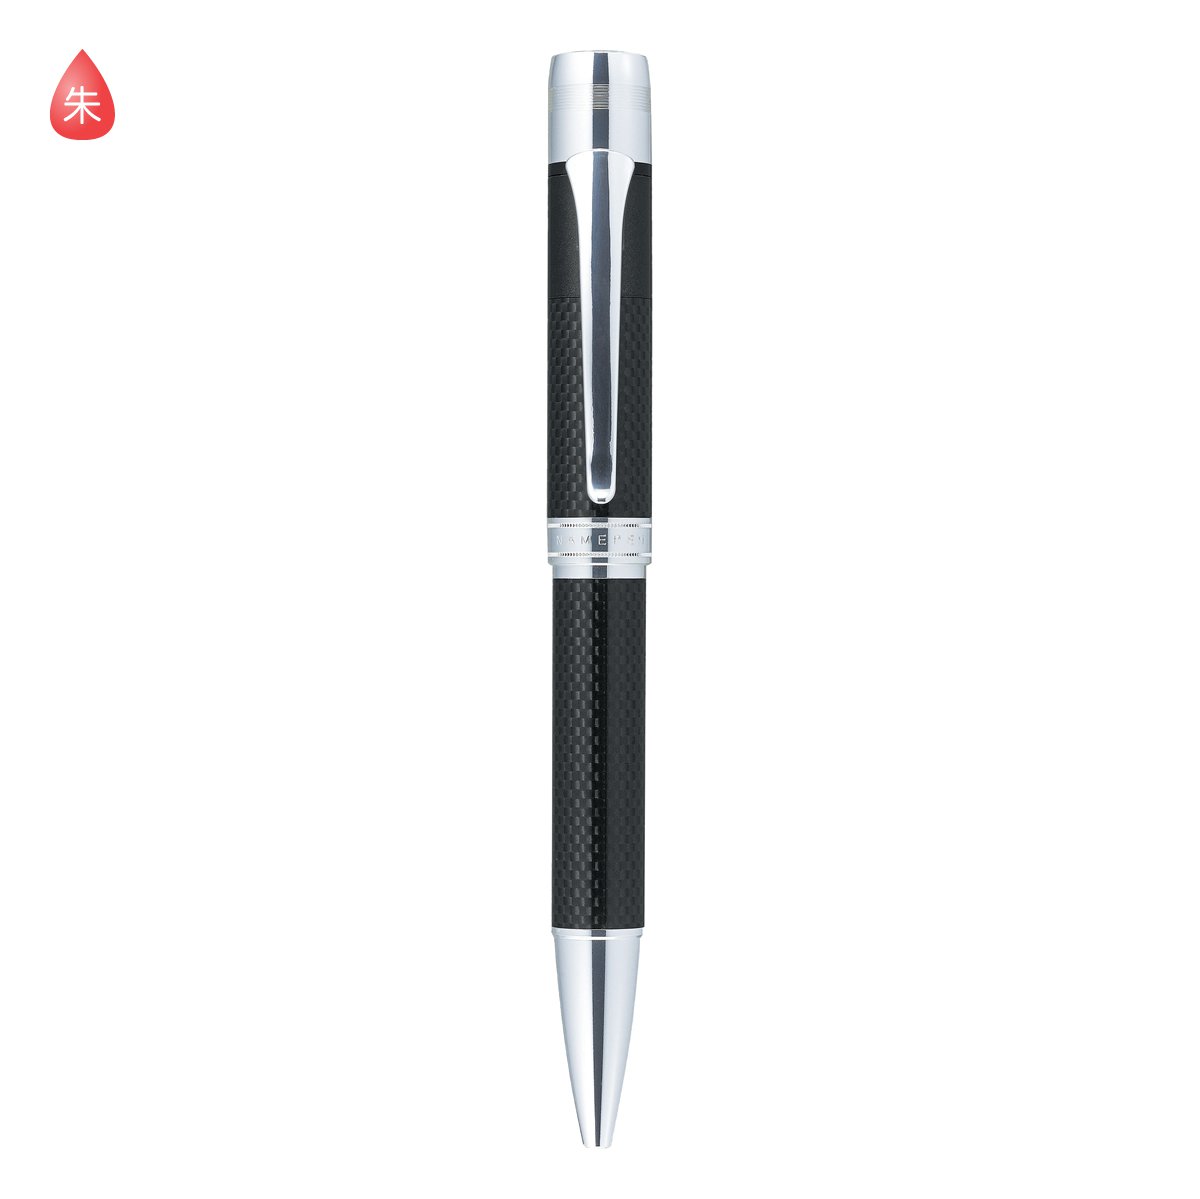 シャチハタ ネームペン パーカー カーボネックス ボールペン 本体色 ブラック ネームペン用ネームx Gps インク色 朱 既製品 Shachihata Xstamper Carbonex Tks Cx2 X Gps コード